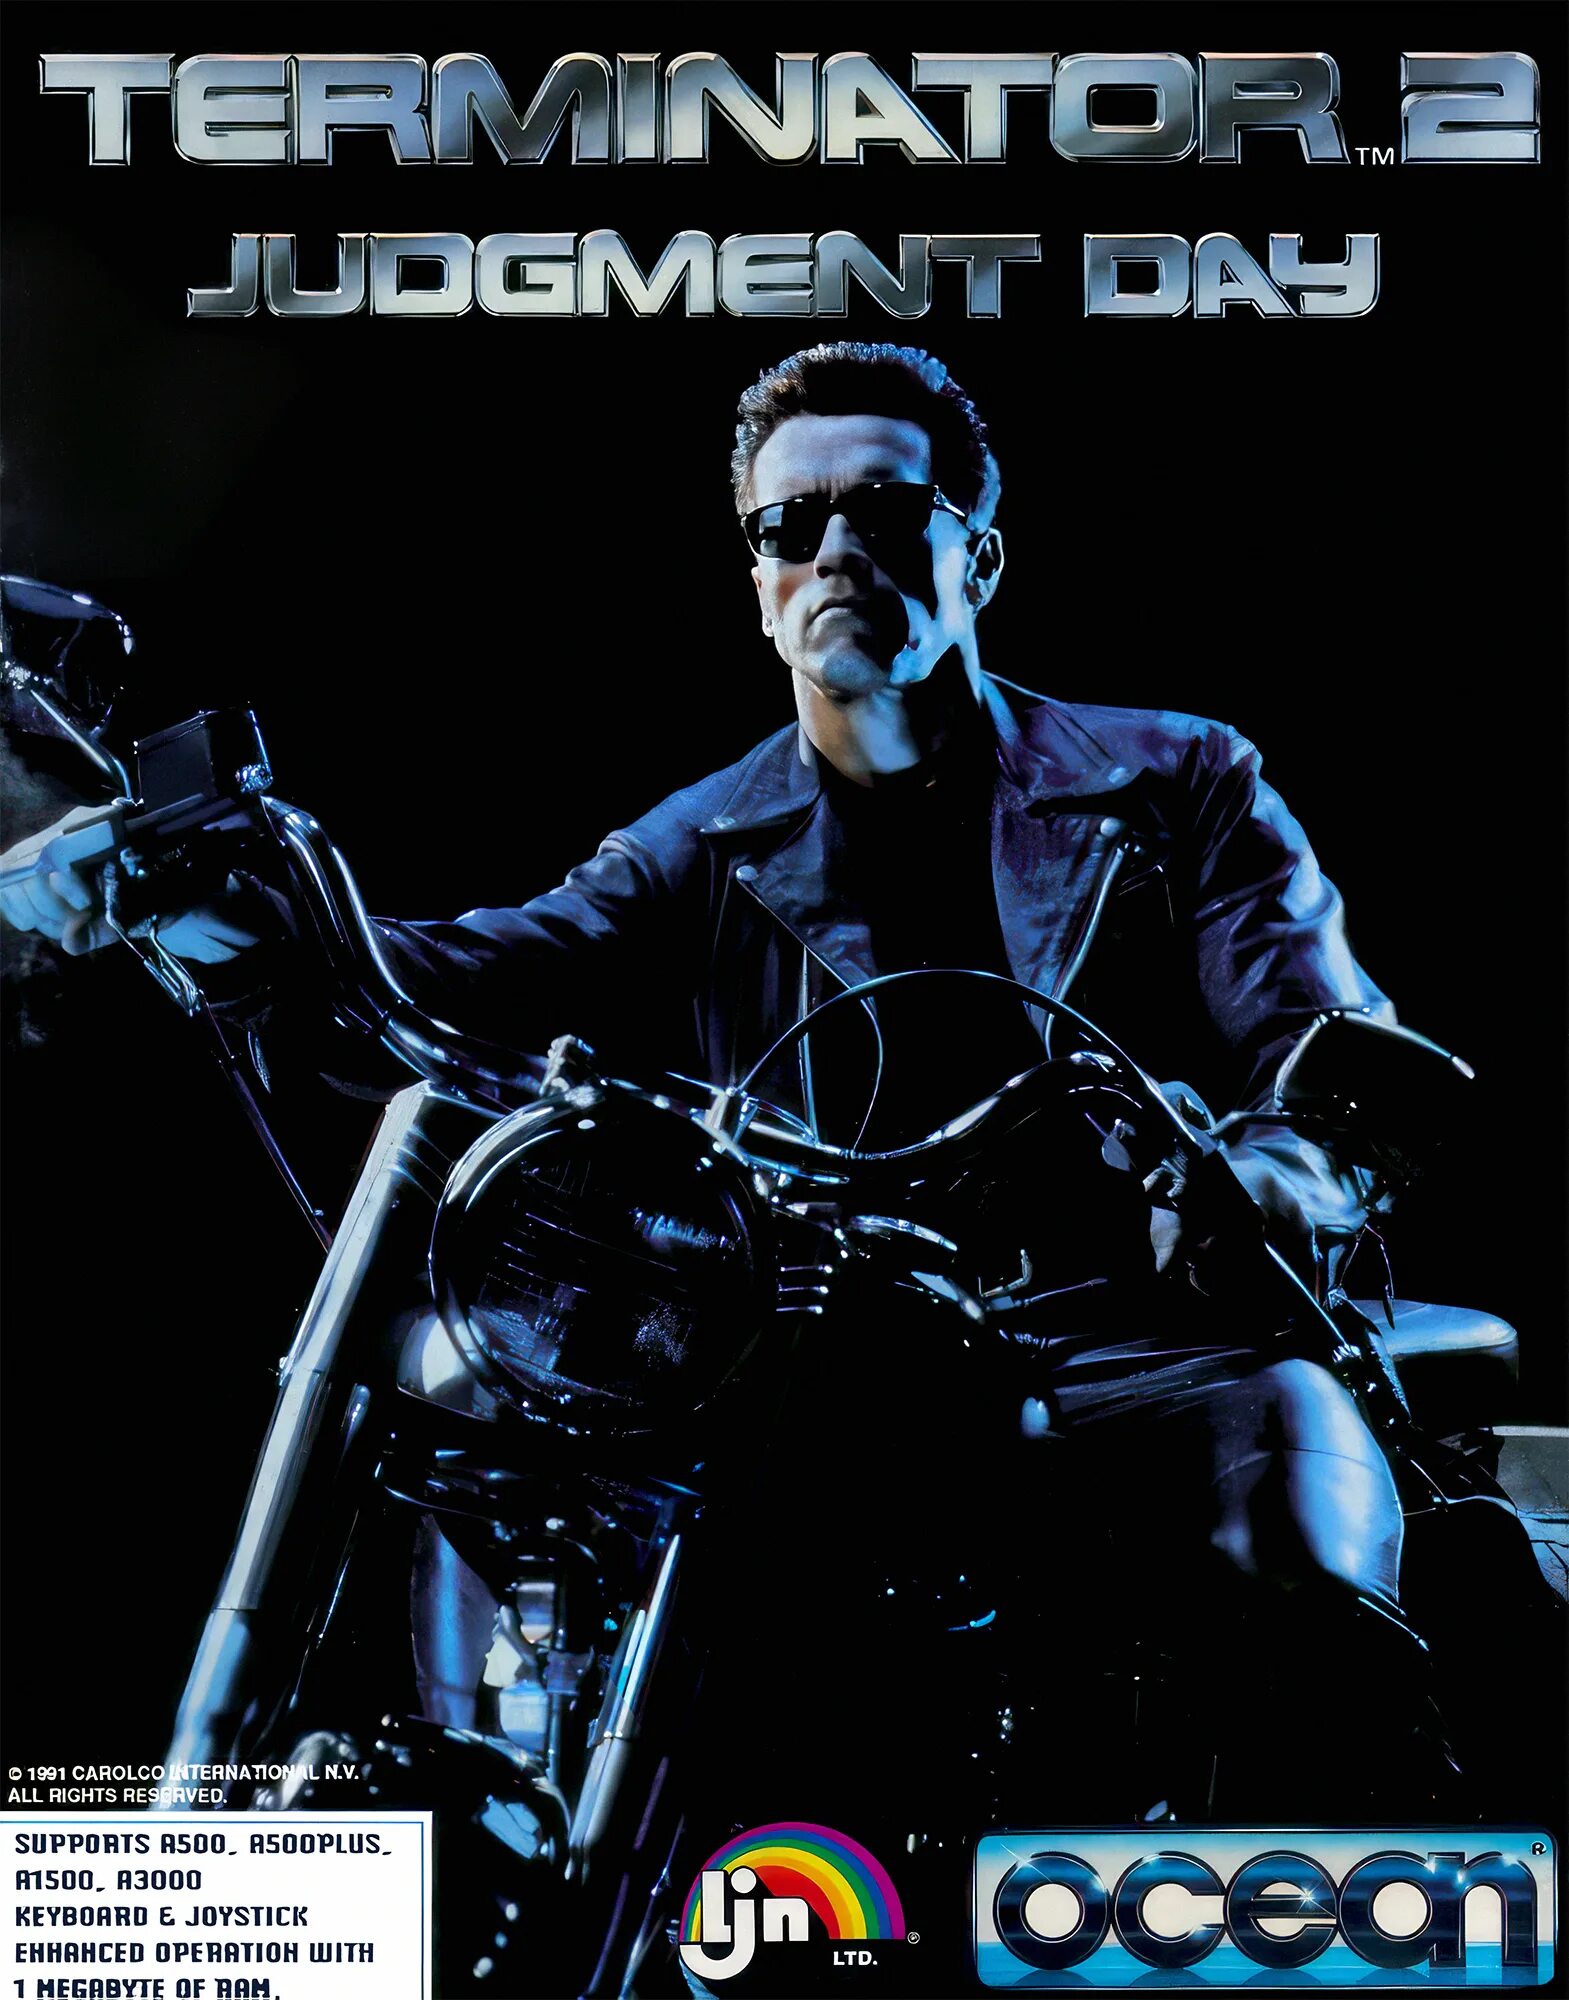 Игры terminator 2. Шварценеггер Терминатор 2. Terminator 2 Judgment Day игра 1991. Terminator 2 Judgment Day Snes обложка. Terminator 2 Judgment Day Sega обложка.